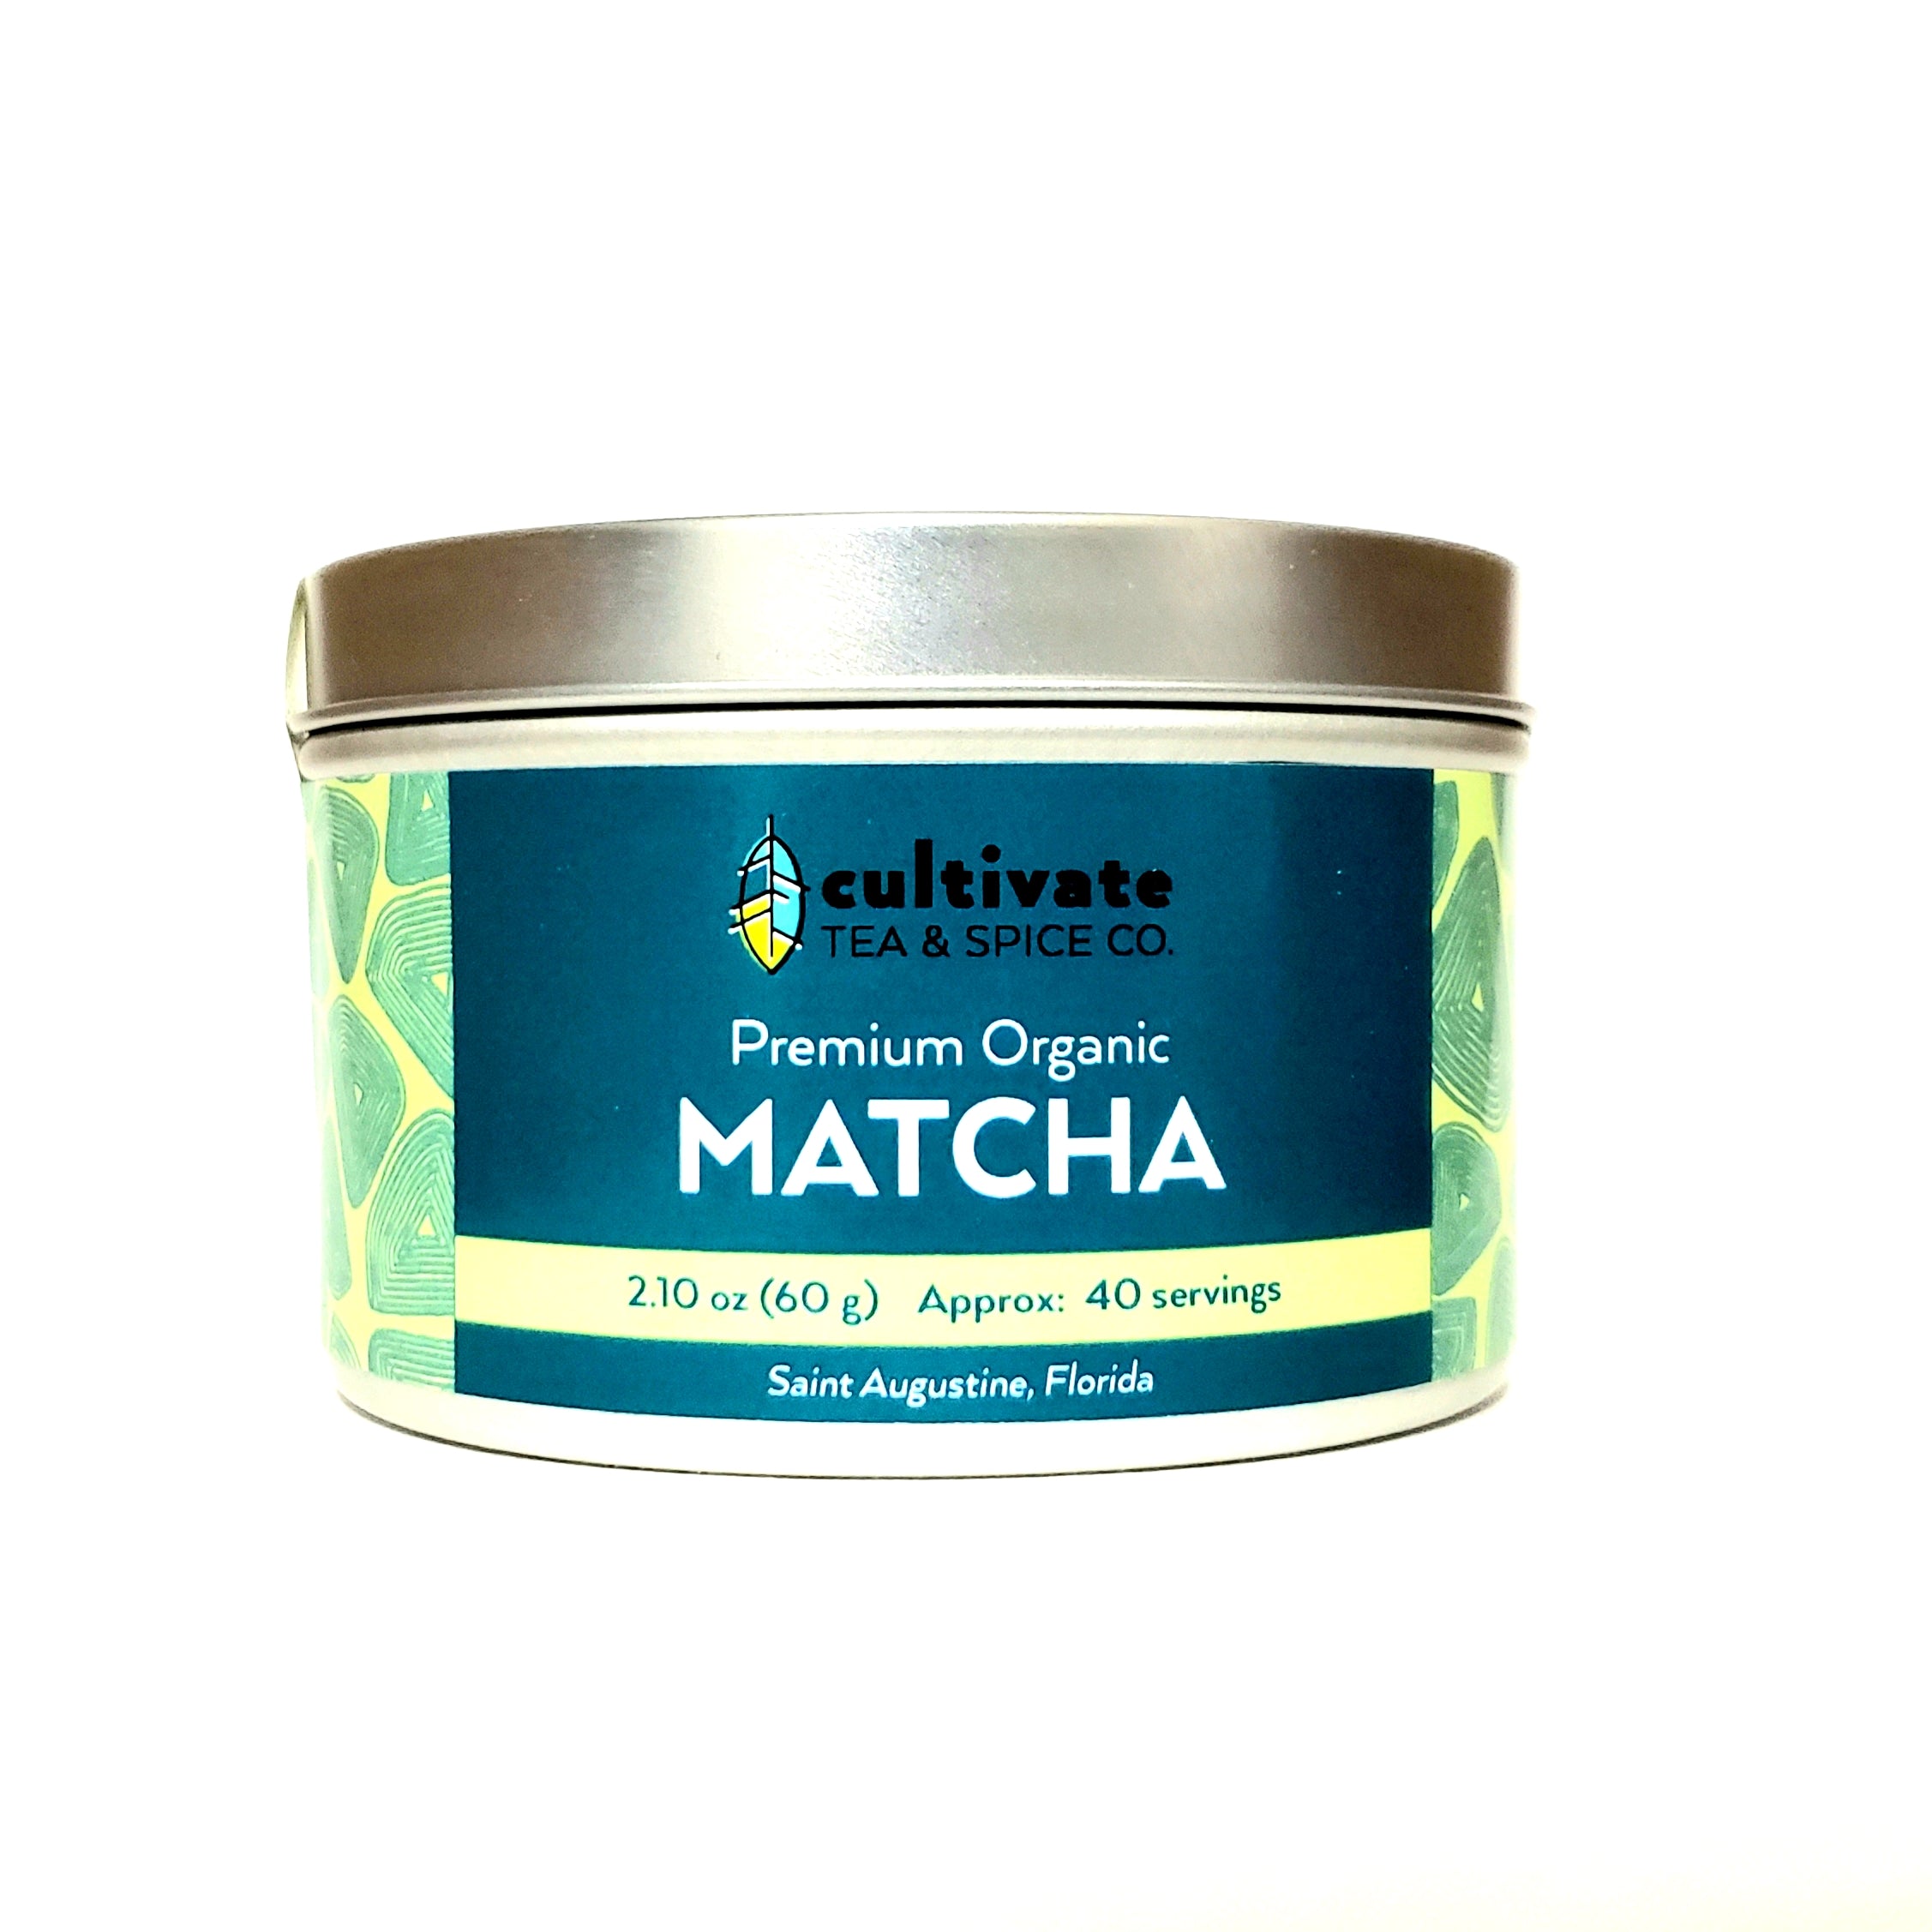 Cultivate Tea and Spice Kagoshima Matcha Tin